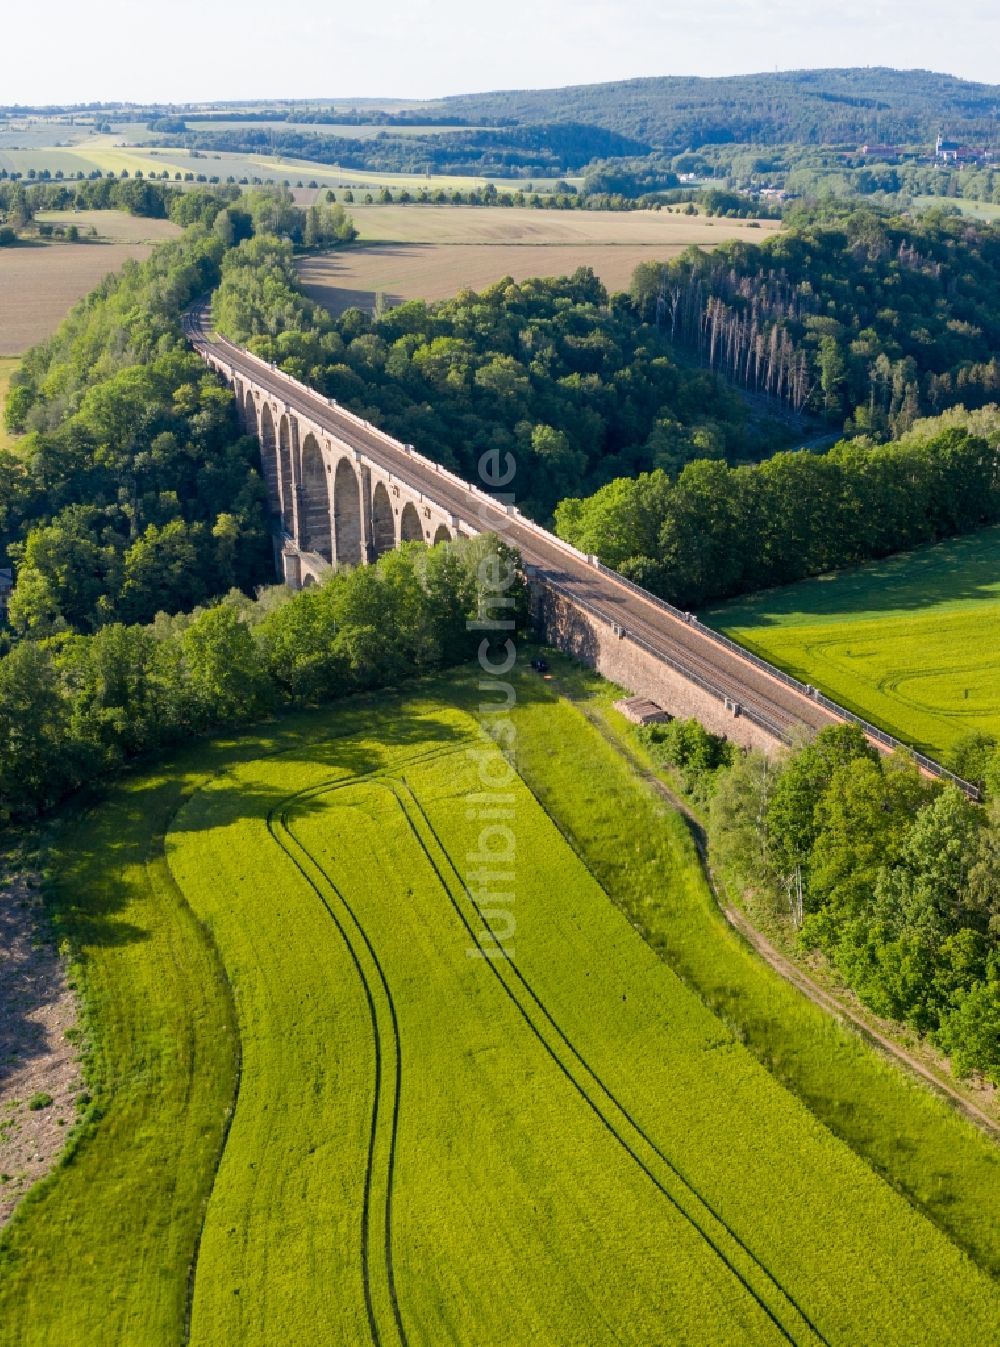 Göhren von oben - Viadukt des Bahn- Brückenbauwerk in Göhren im Bundesland Sachsen, Deutschland